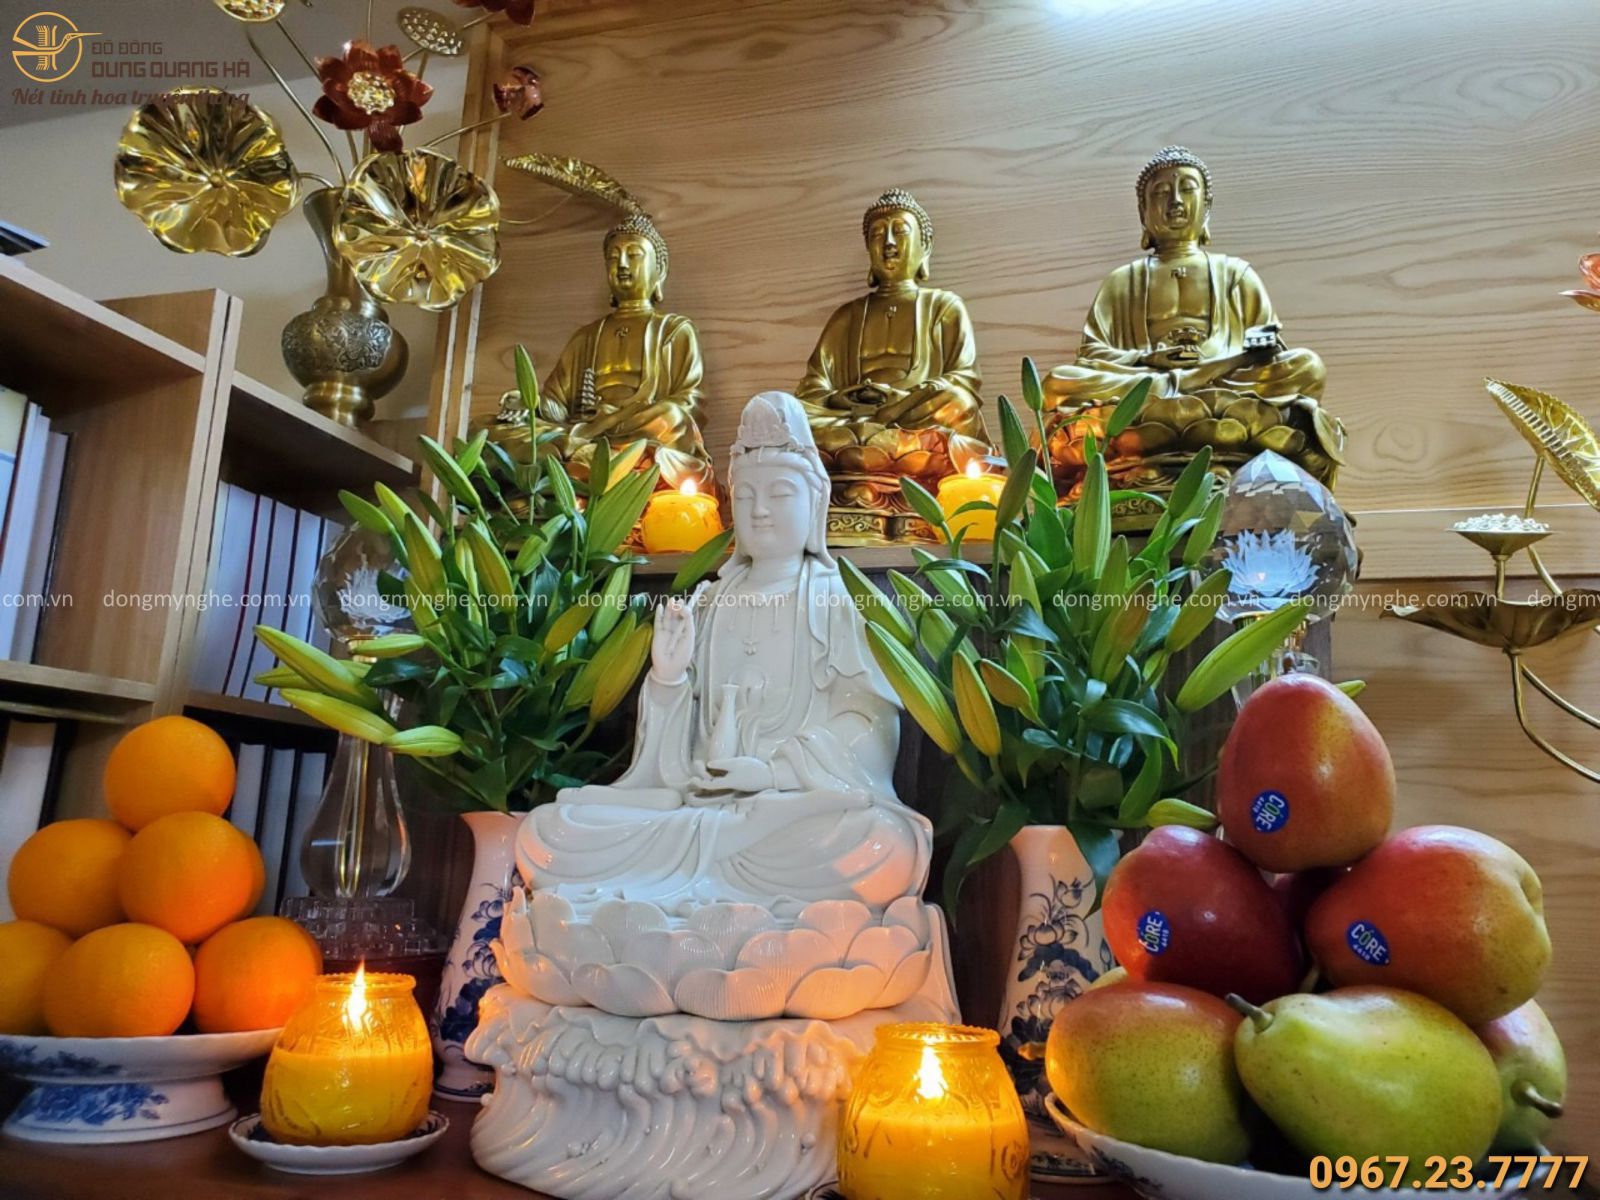 Cách Sắp Xếp Tượng Phật Trong Nhà Đơn Giản Mà Chuẩn Chỉnh